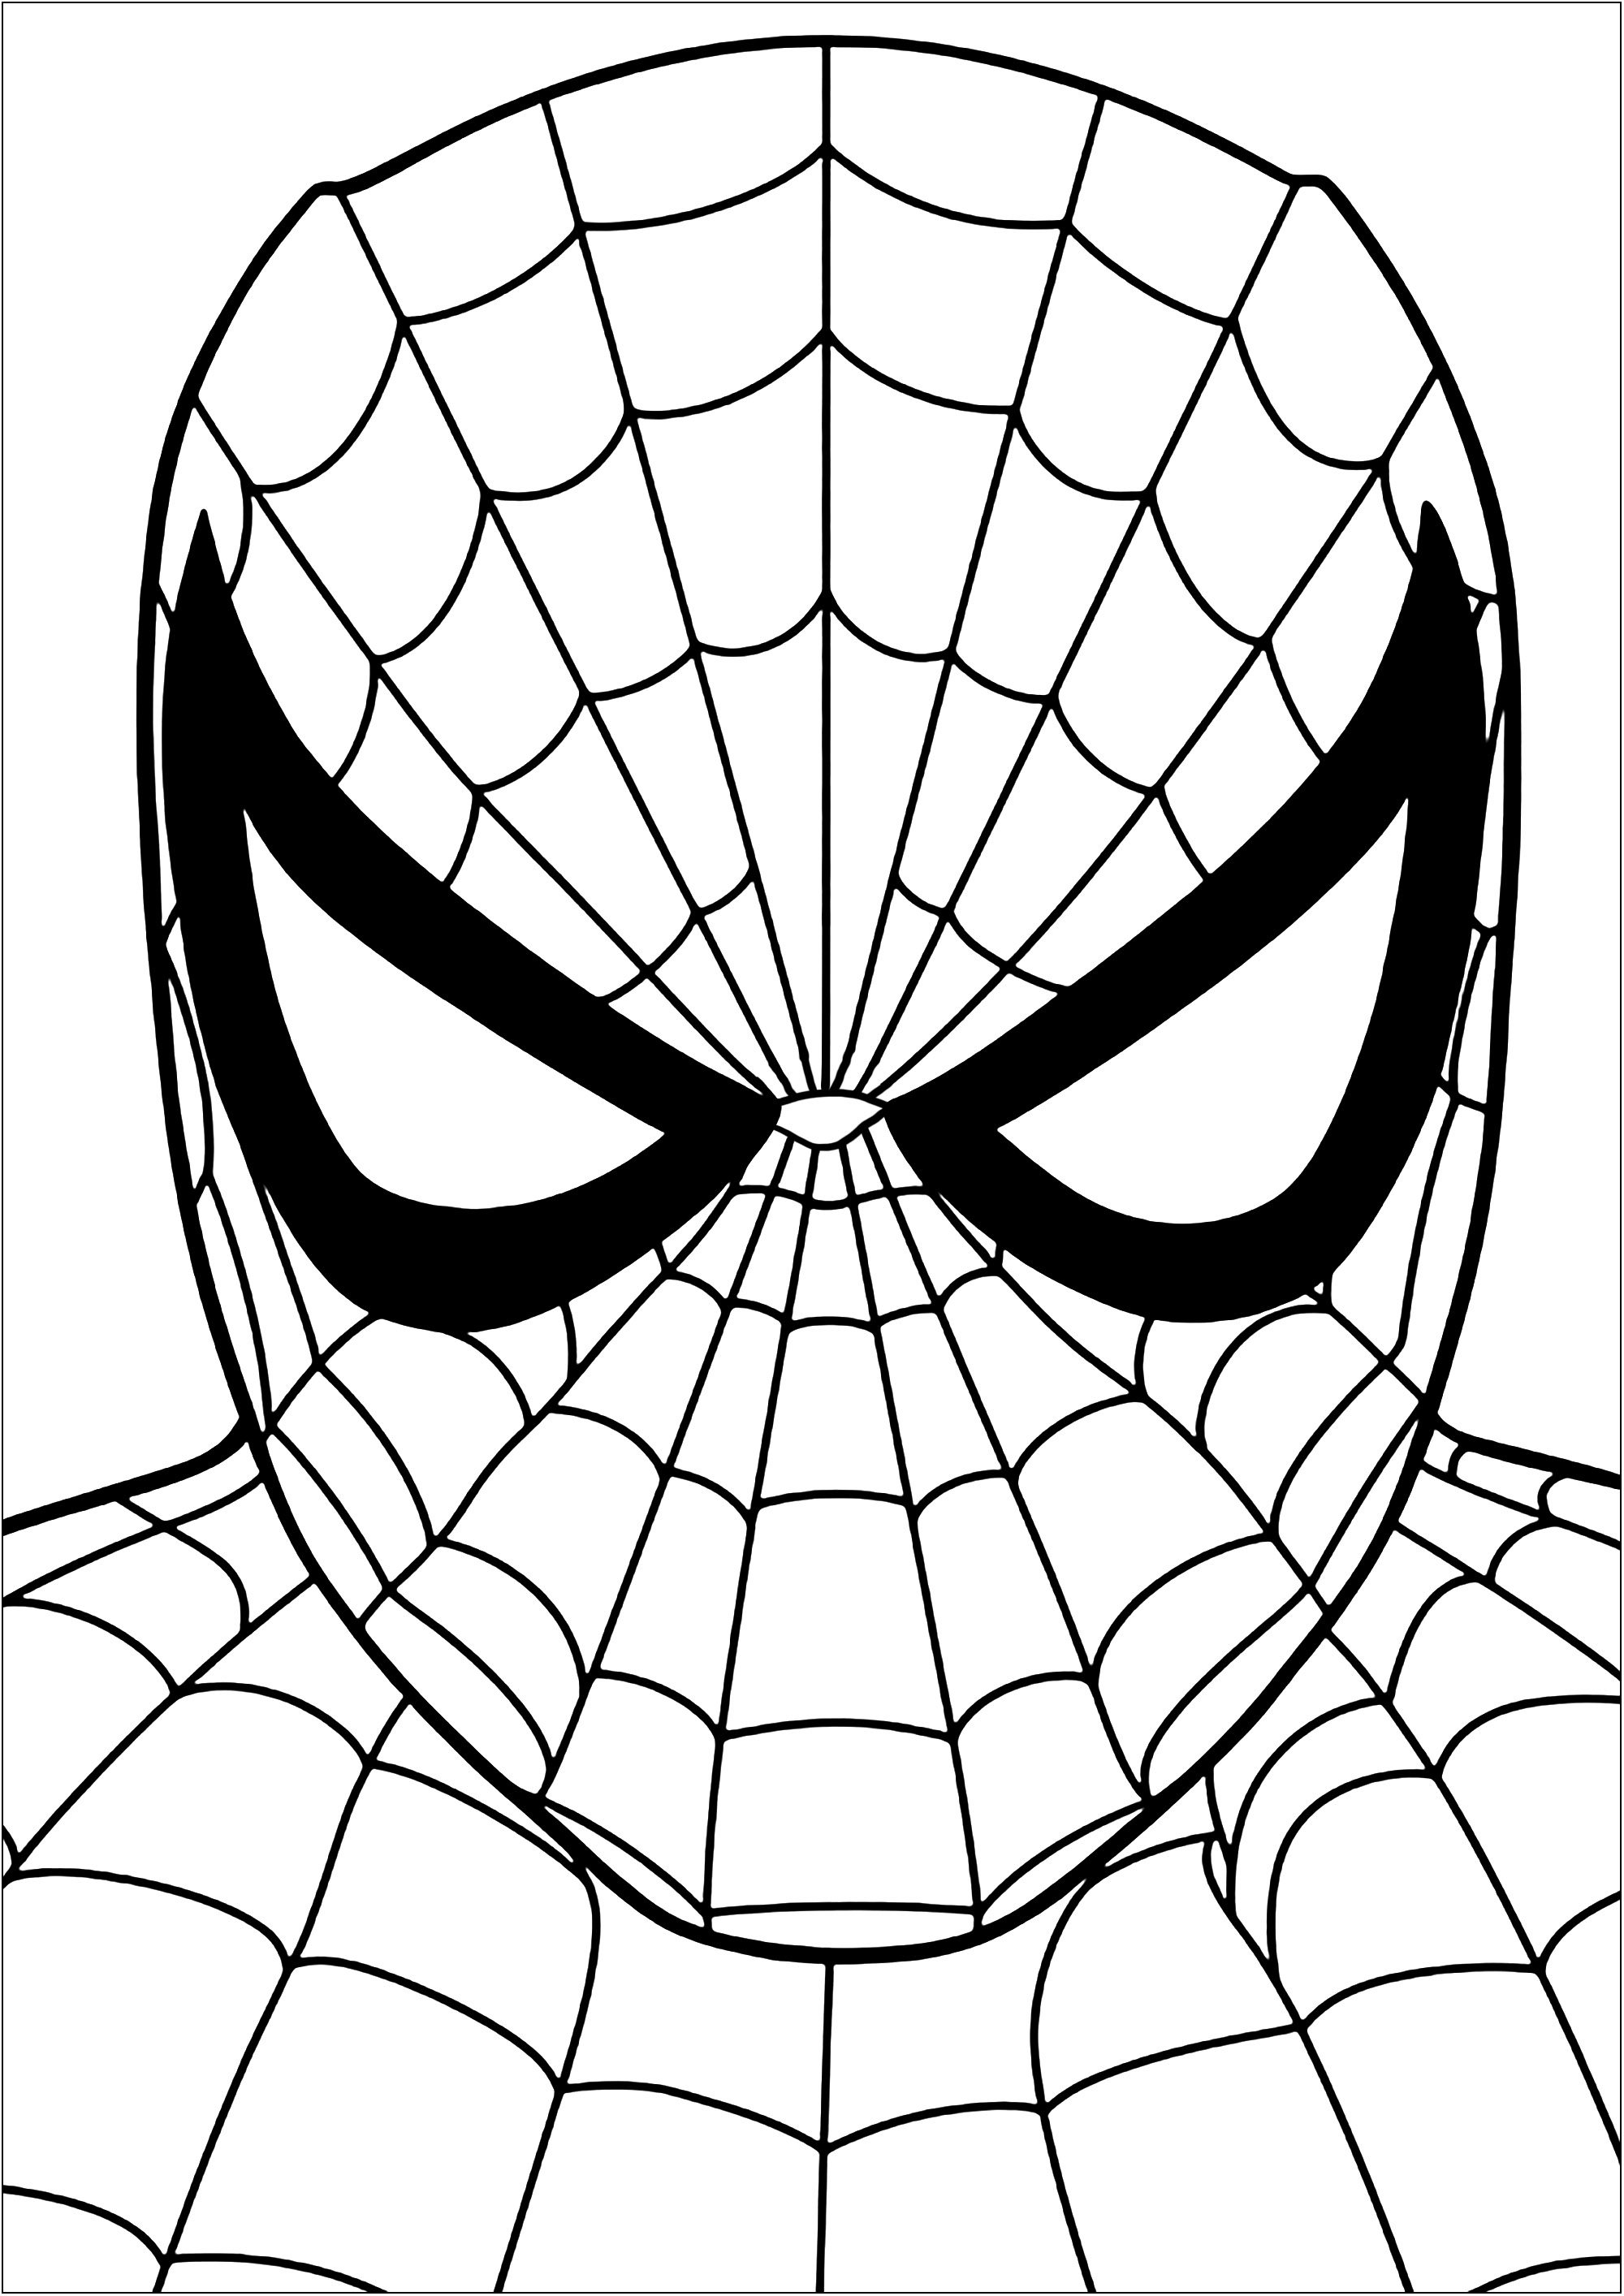 Cabeza de Spiderman - Spiderman - Just Color Niños : Dibujos para colorear  para niños